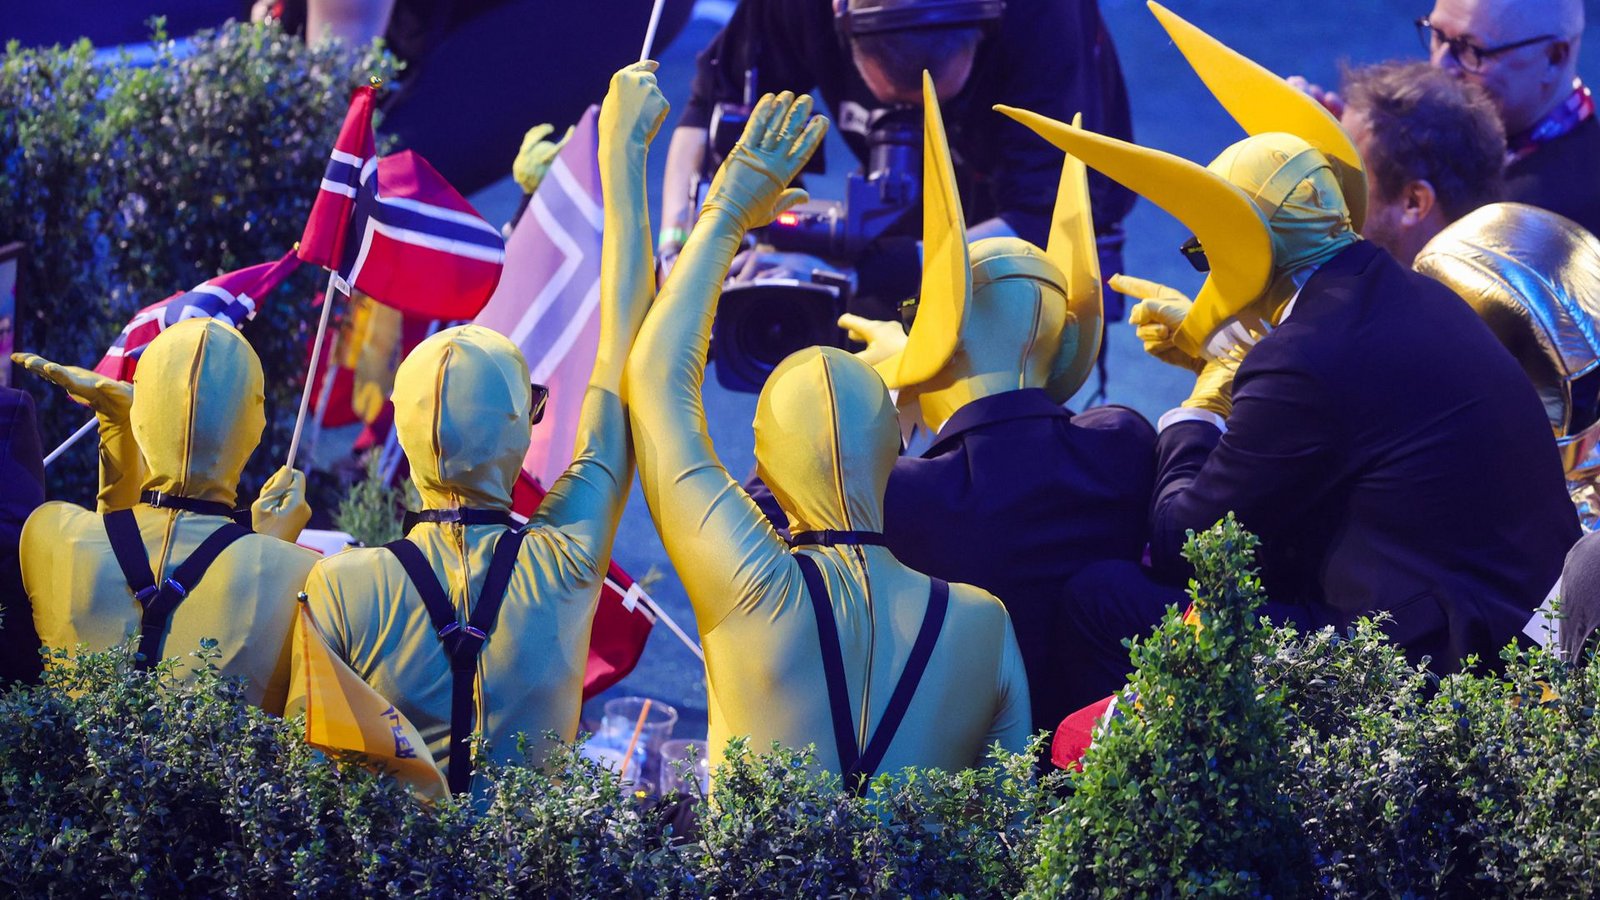 Mit verrückten Kostümen machte das Team rund um die Band Subwoolfer aus Norwegen auf sich aufmerksam.Foto: dpa/Jens Büttner